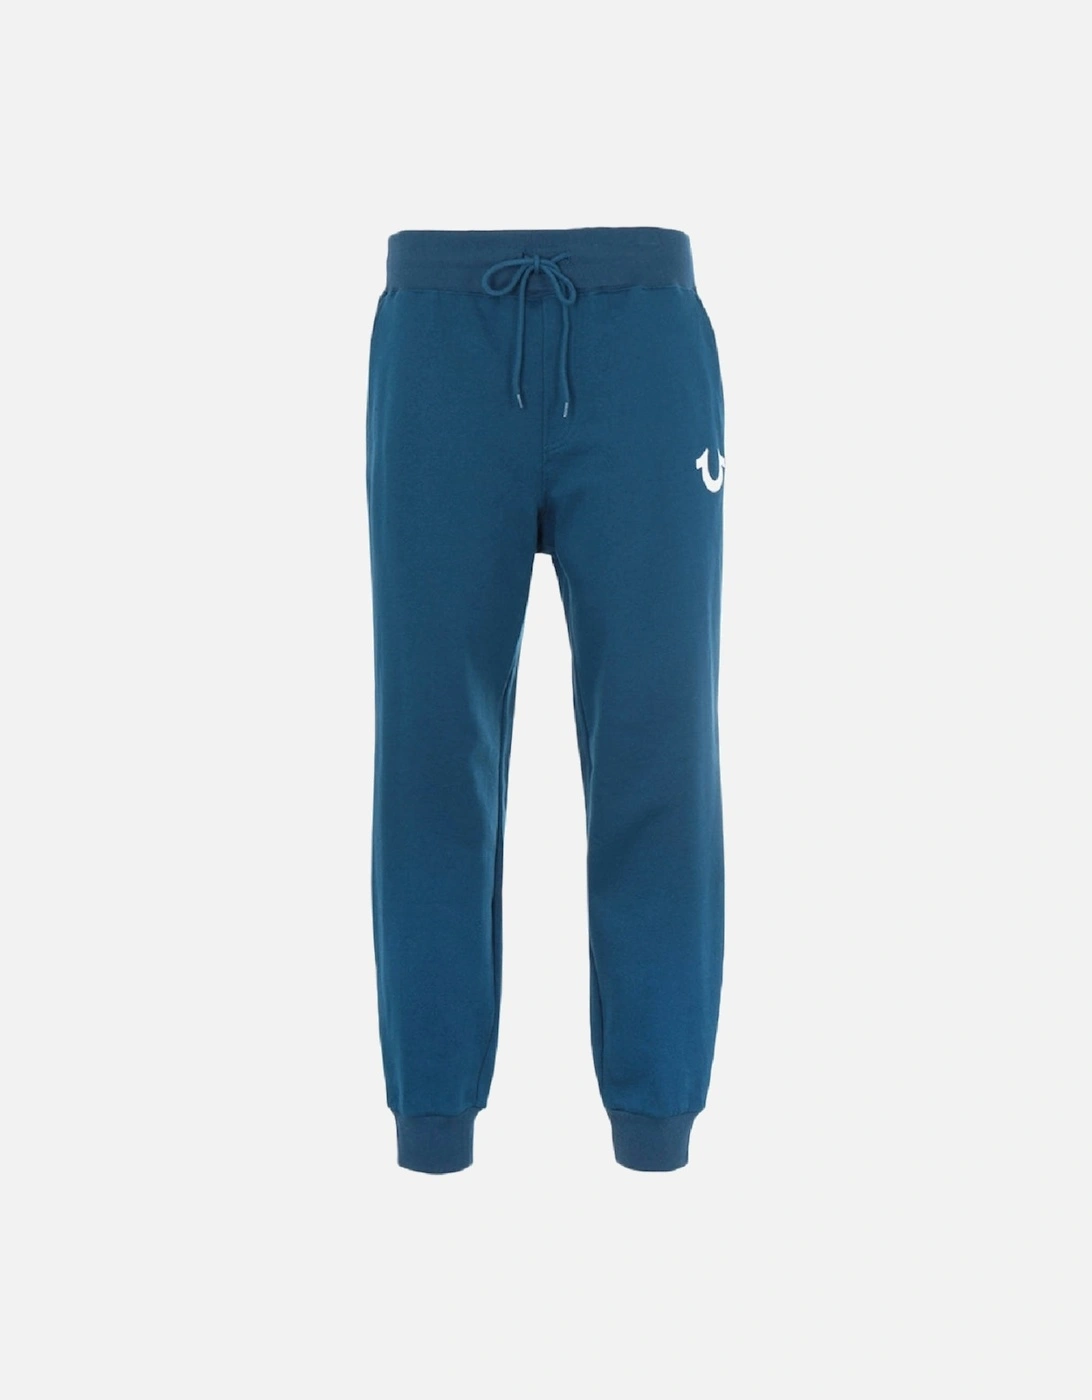 HS True Jogger Blue Sweatpants, 3 of 2